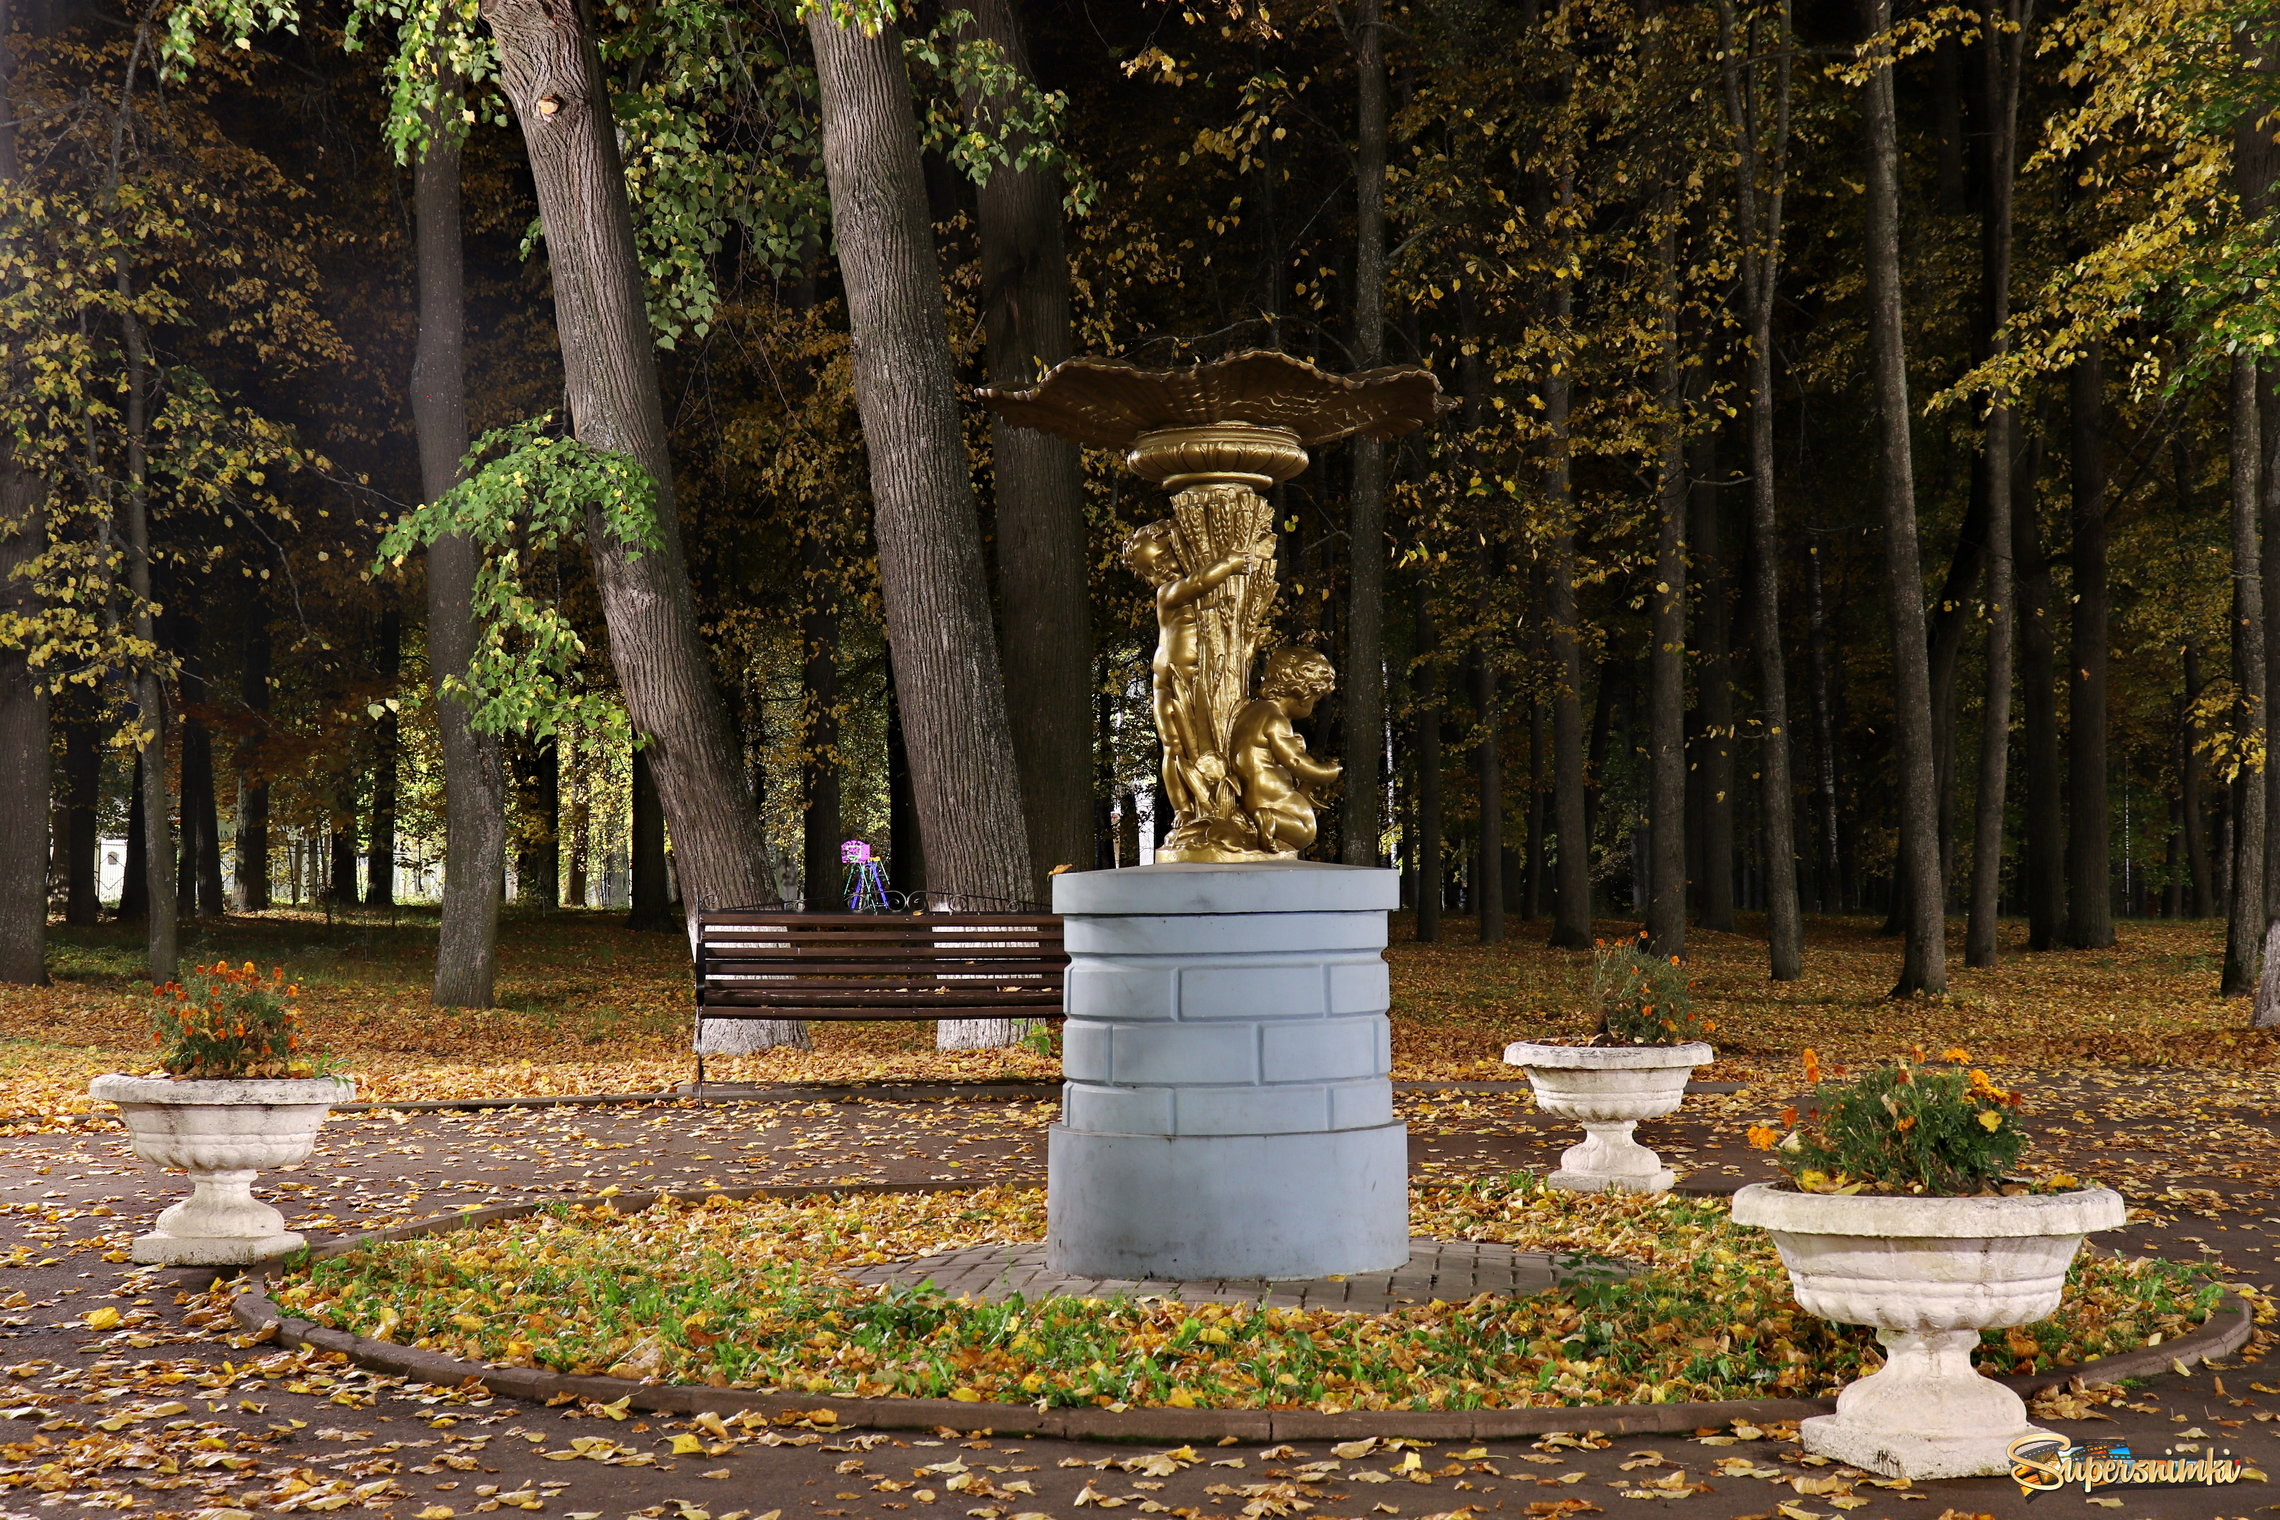 Шуя, городской парк. Скульптура "Сельская идиллия", начало 19 века.